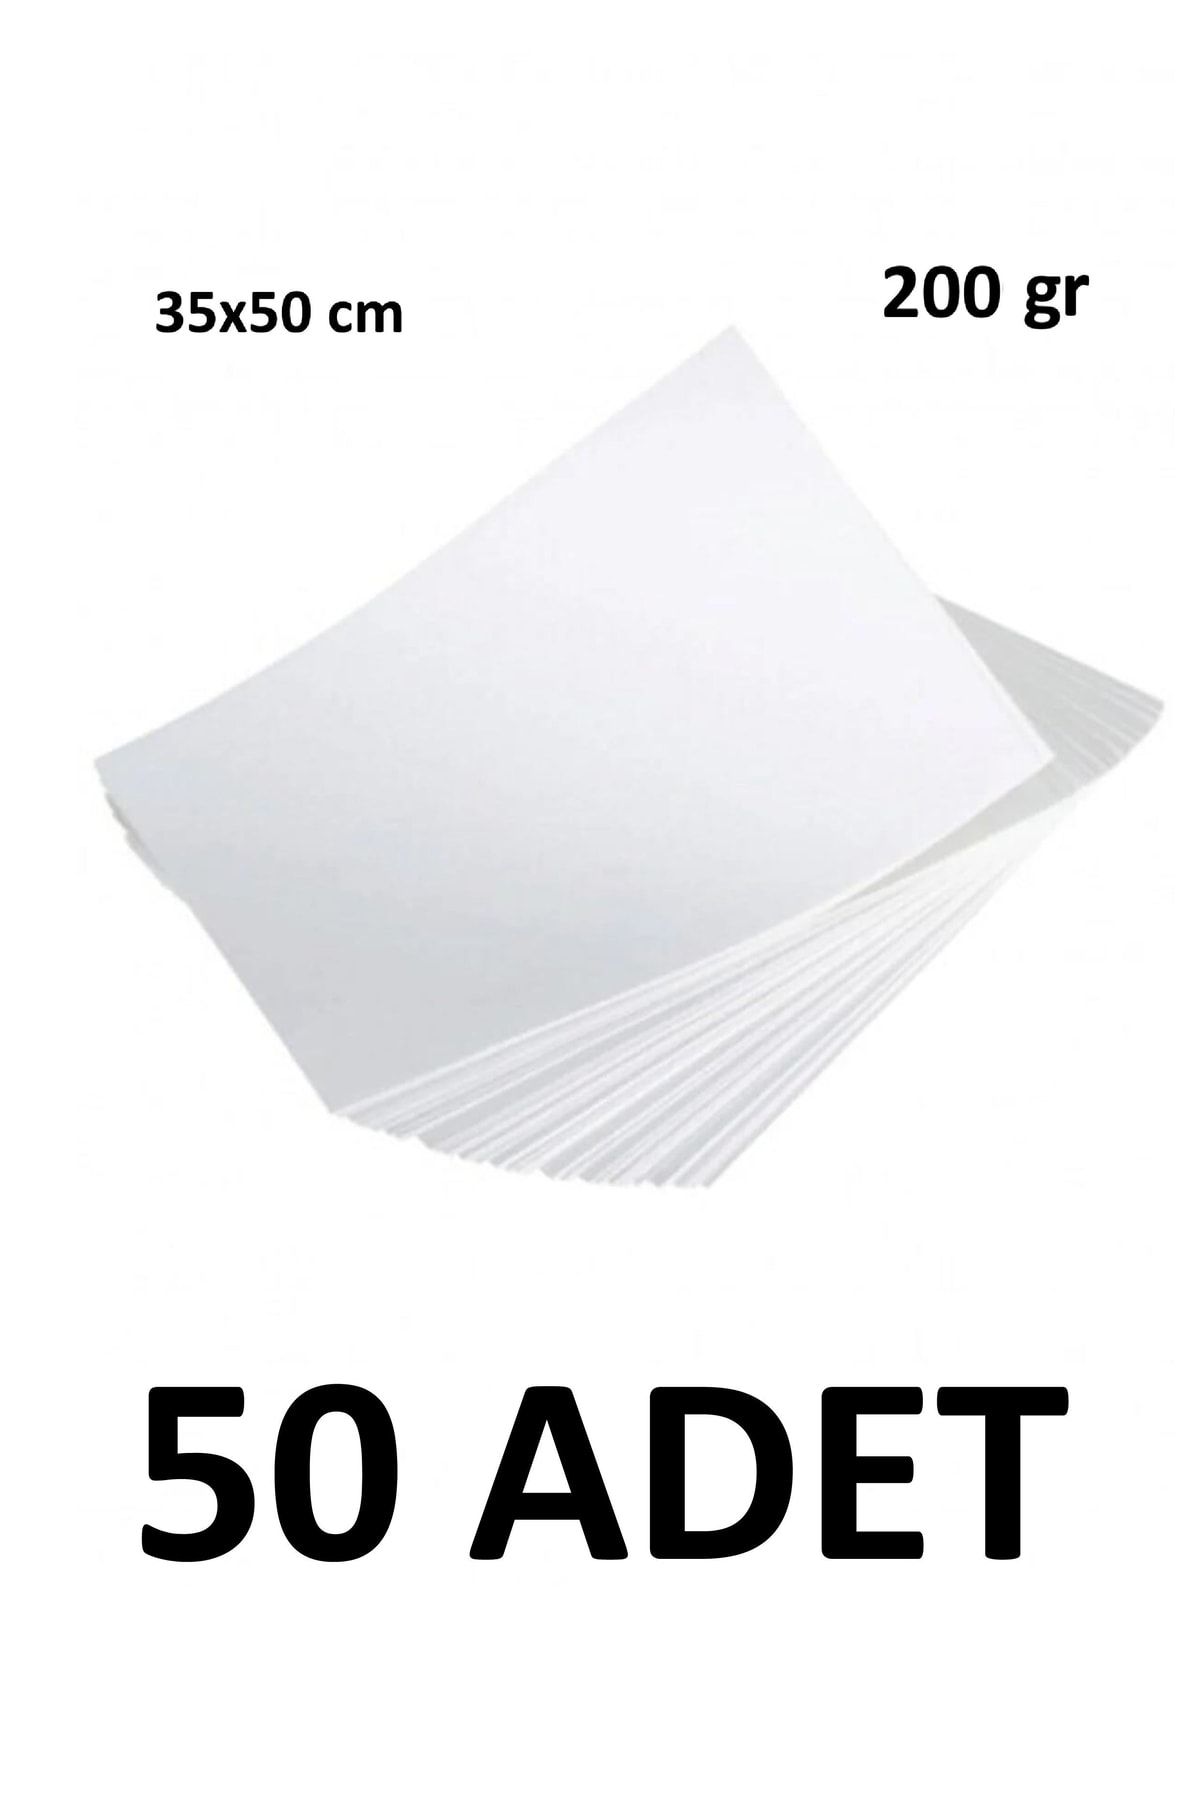 Keskin Color 50 Adet Karatis Art Beyaz Resim Kağıdı 35 X 50 Cm 200 Gr